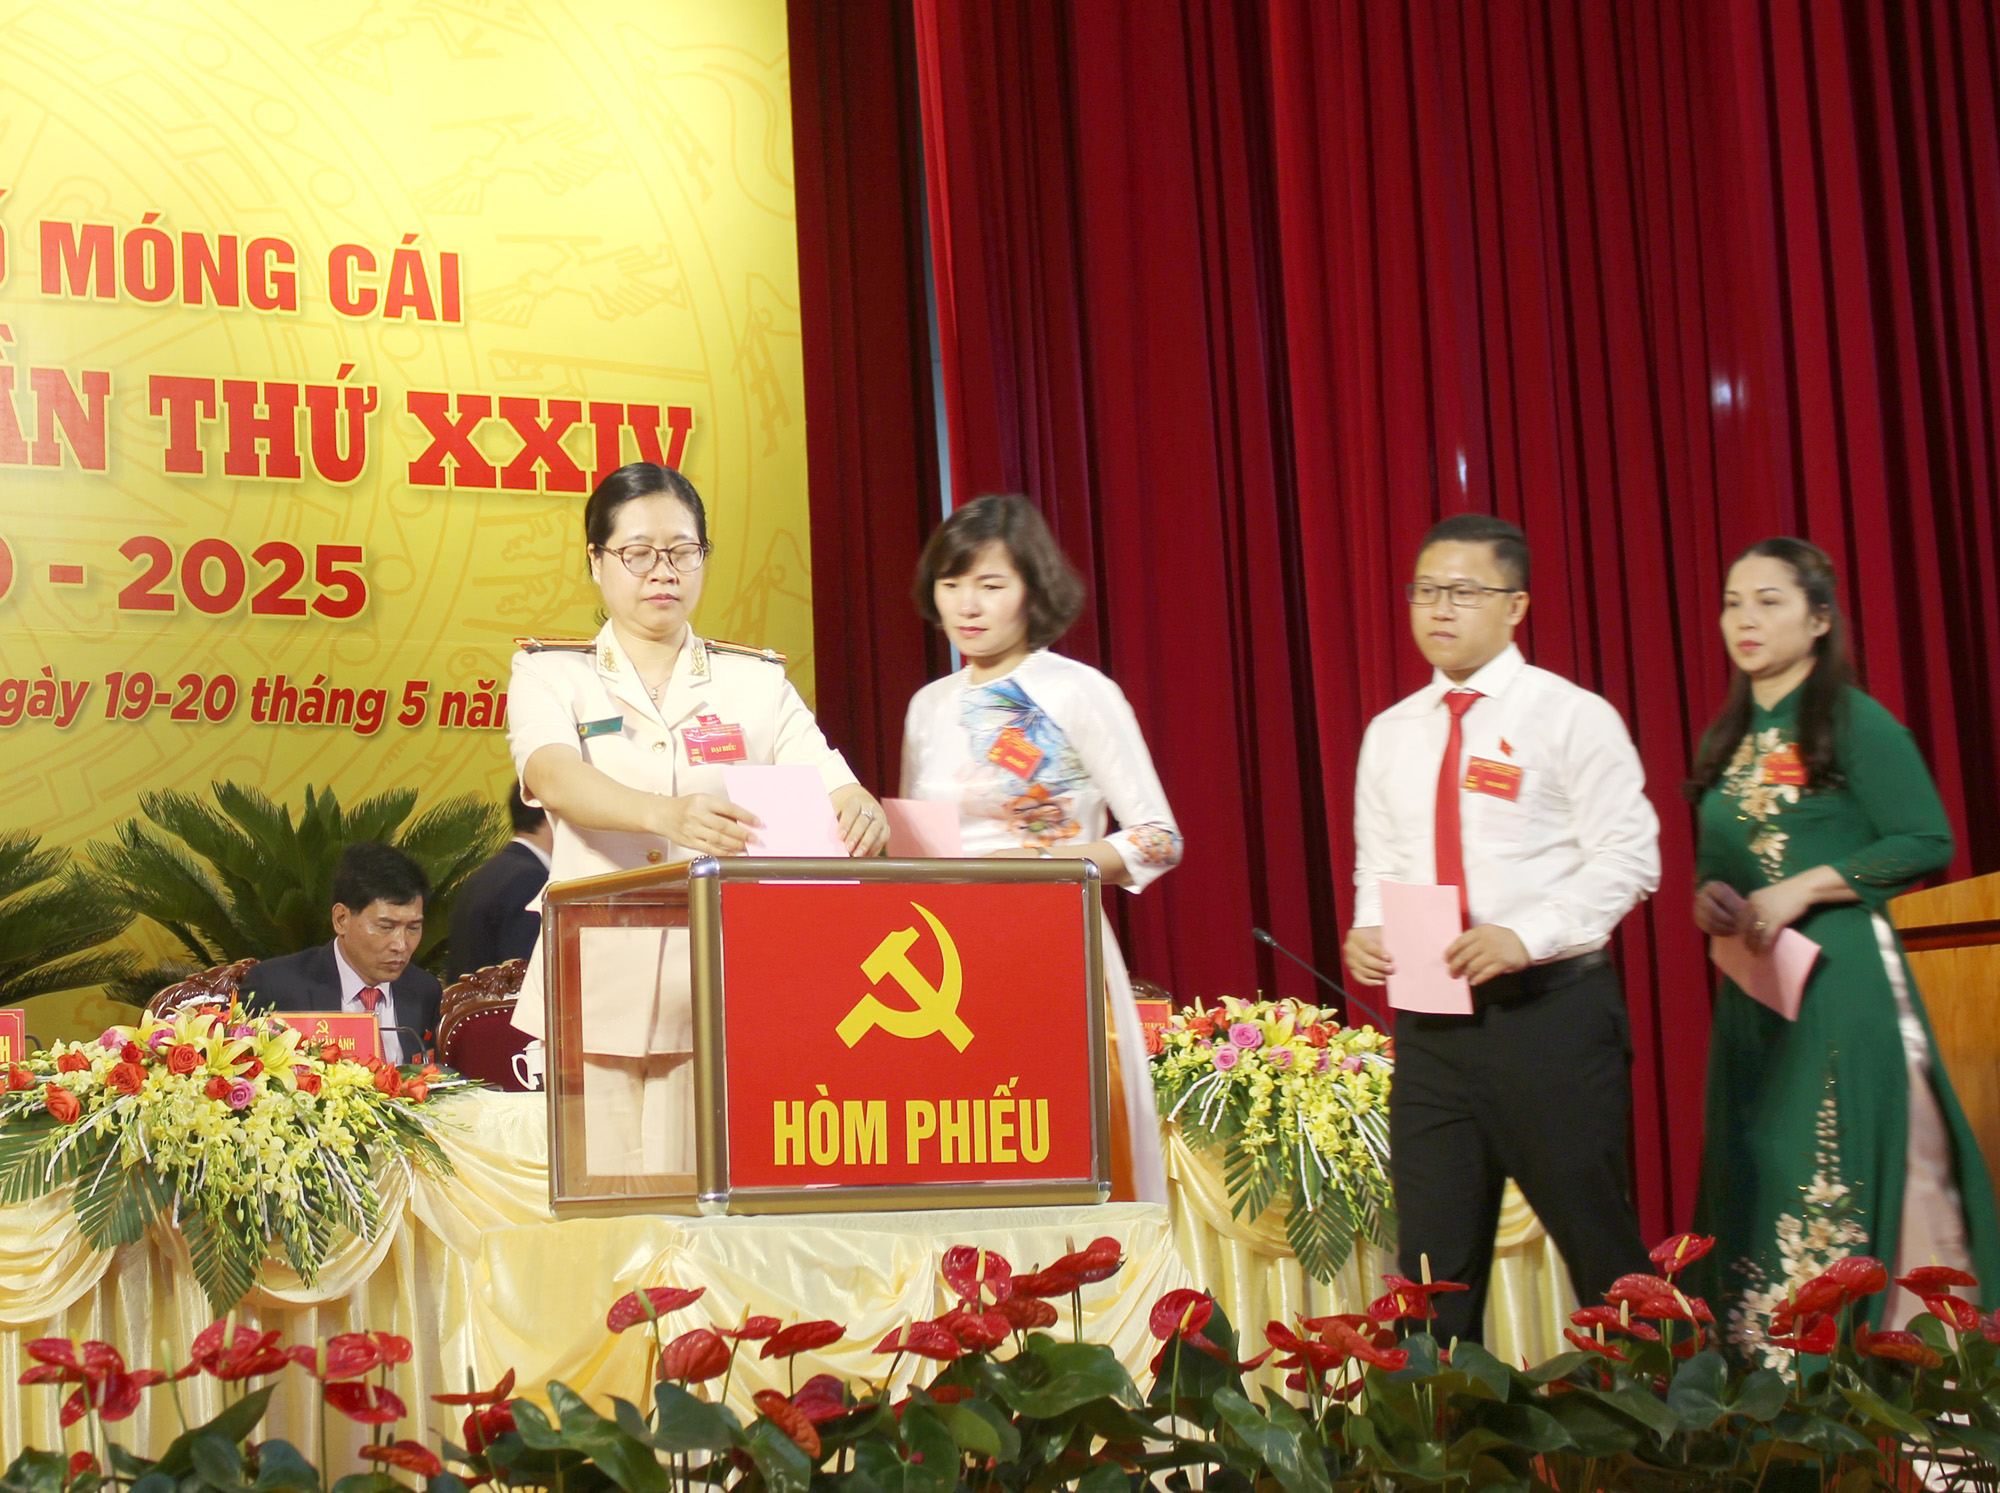 Đồng chí Lê Văn Ánh được 100% địa biểu dự đại hội đại biểu Đảng bộ thành phố lần thứ XXIV  tín nhiệm bầu giữ